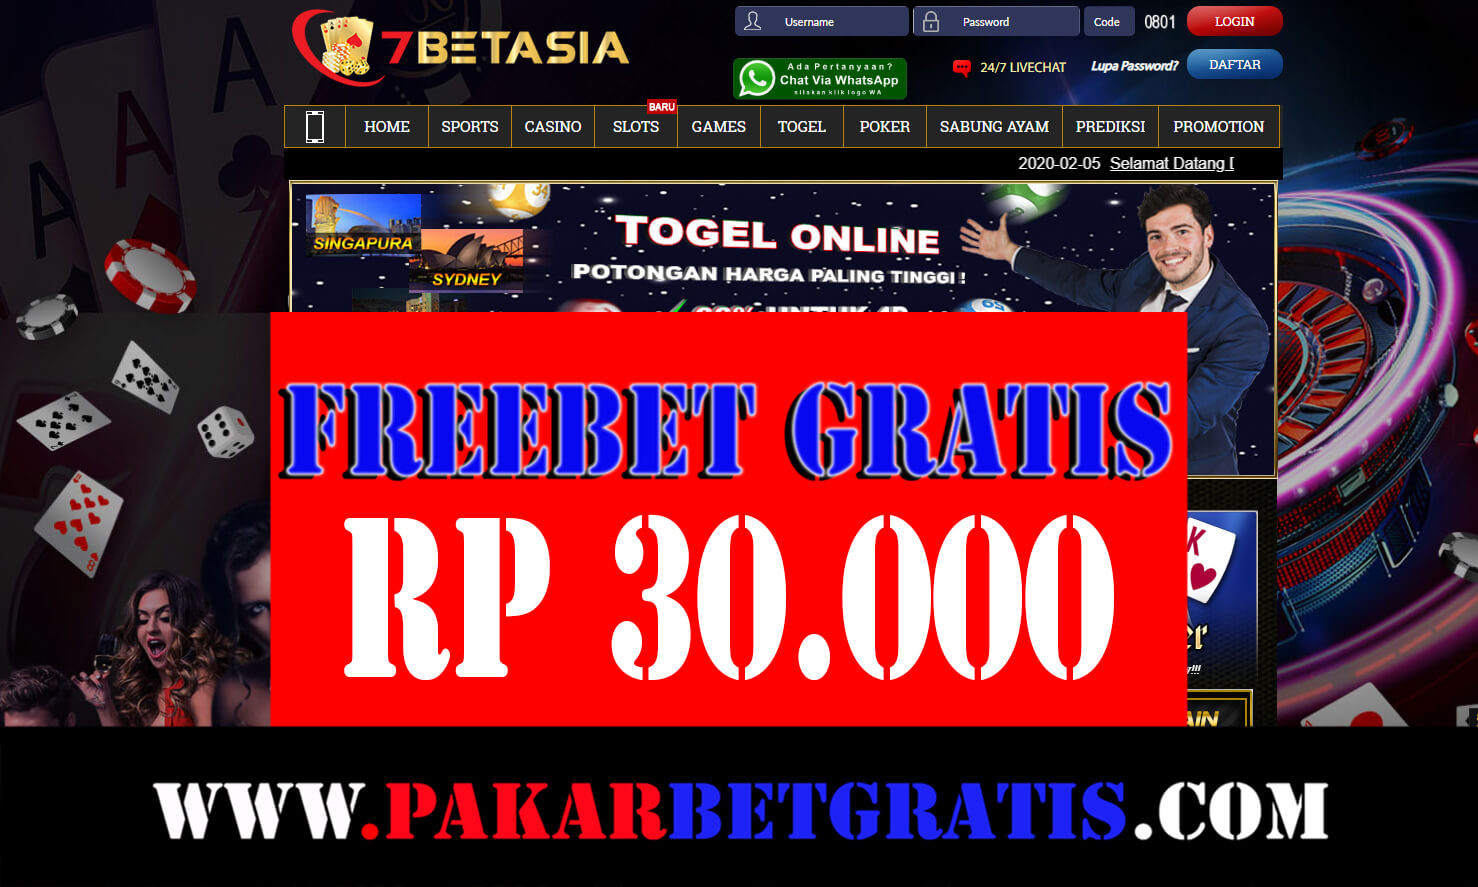 7betasia Freebet gratis Rp 30.000 tanpa deposit